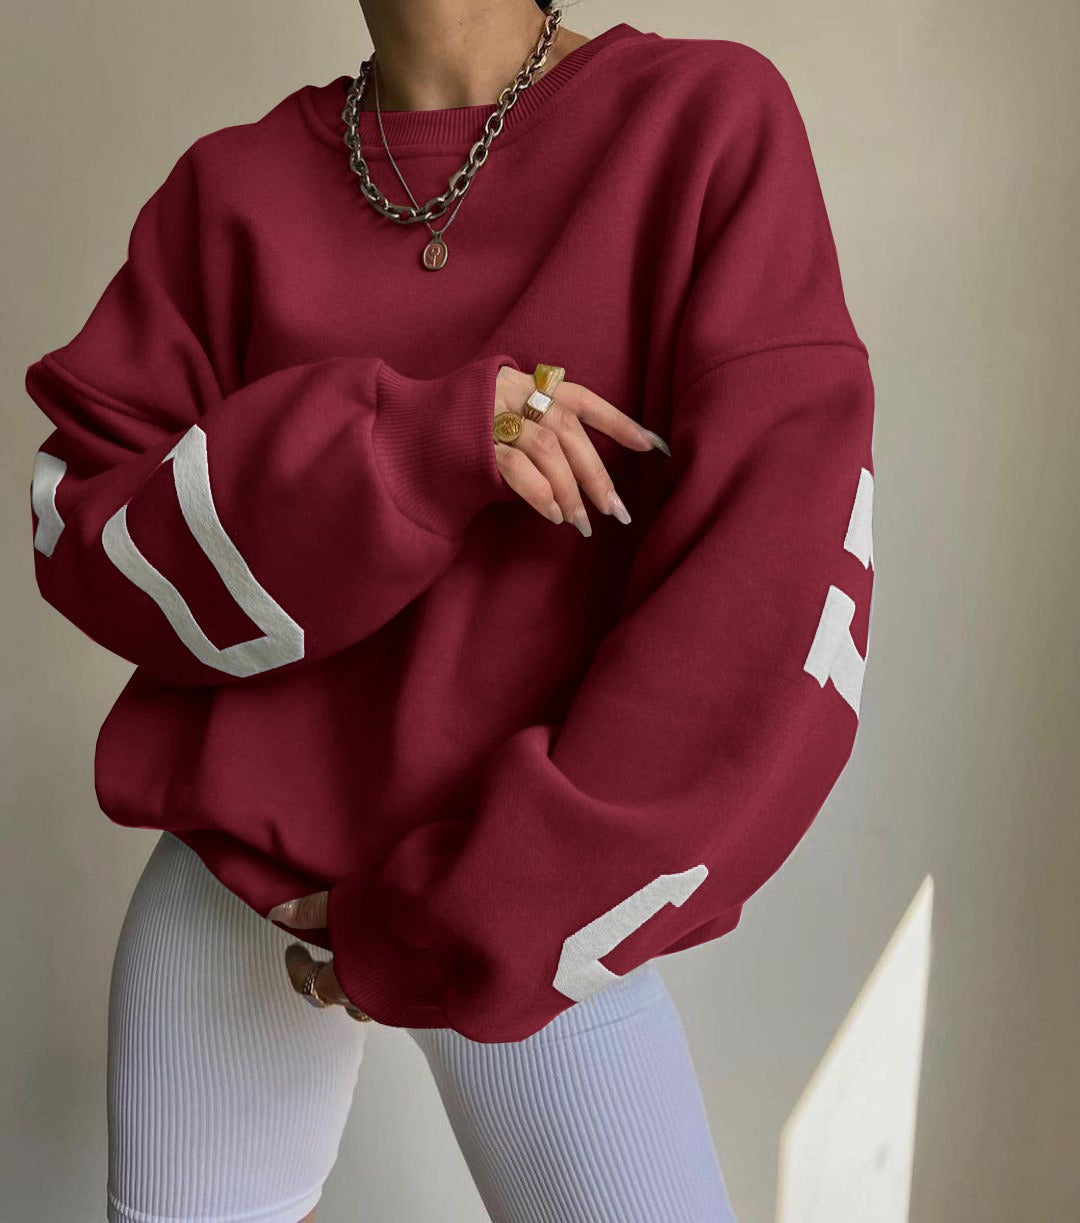 Casual Letters Print Sweatshirt Women Fashion Fleece Long Sleeve Loose Hoodies Y2k Streetwear  Autumn Winter Lady Pullovers